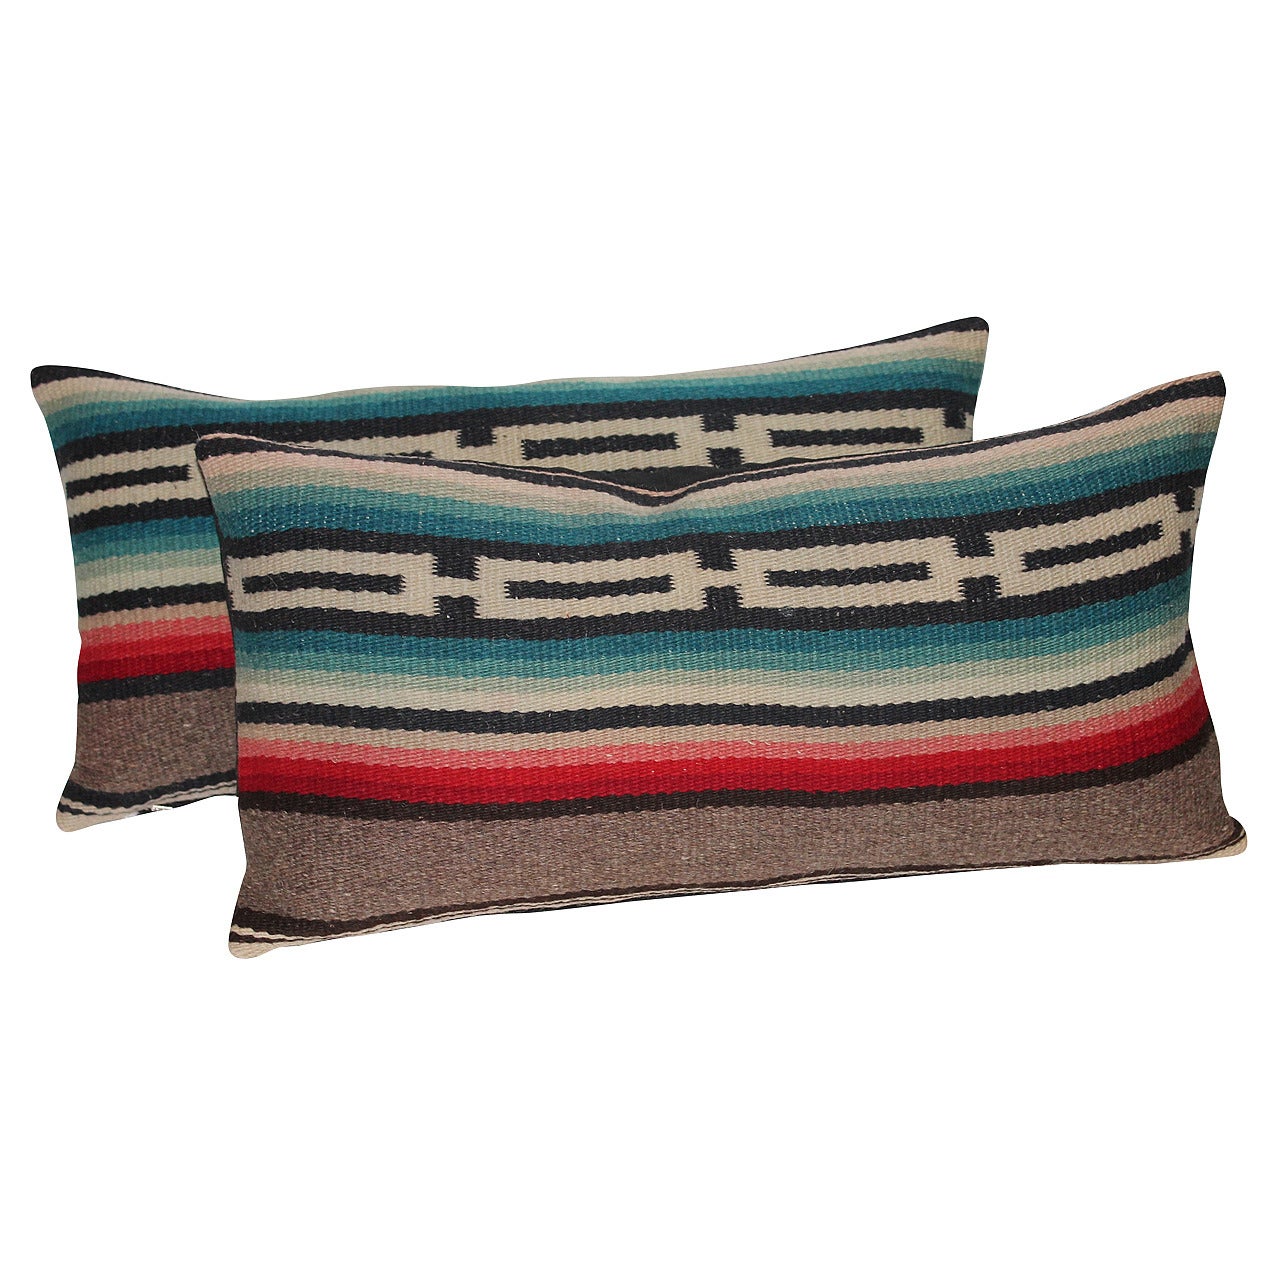 Pair of Mexican Serape Pillows